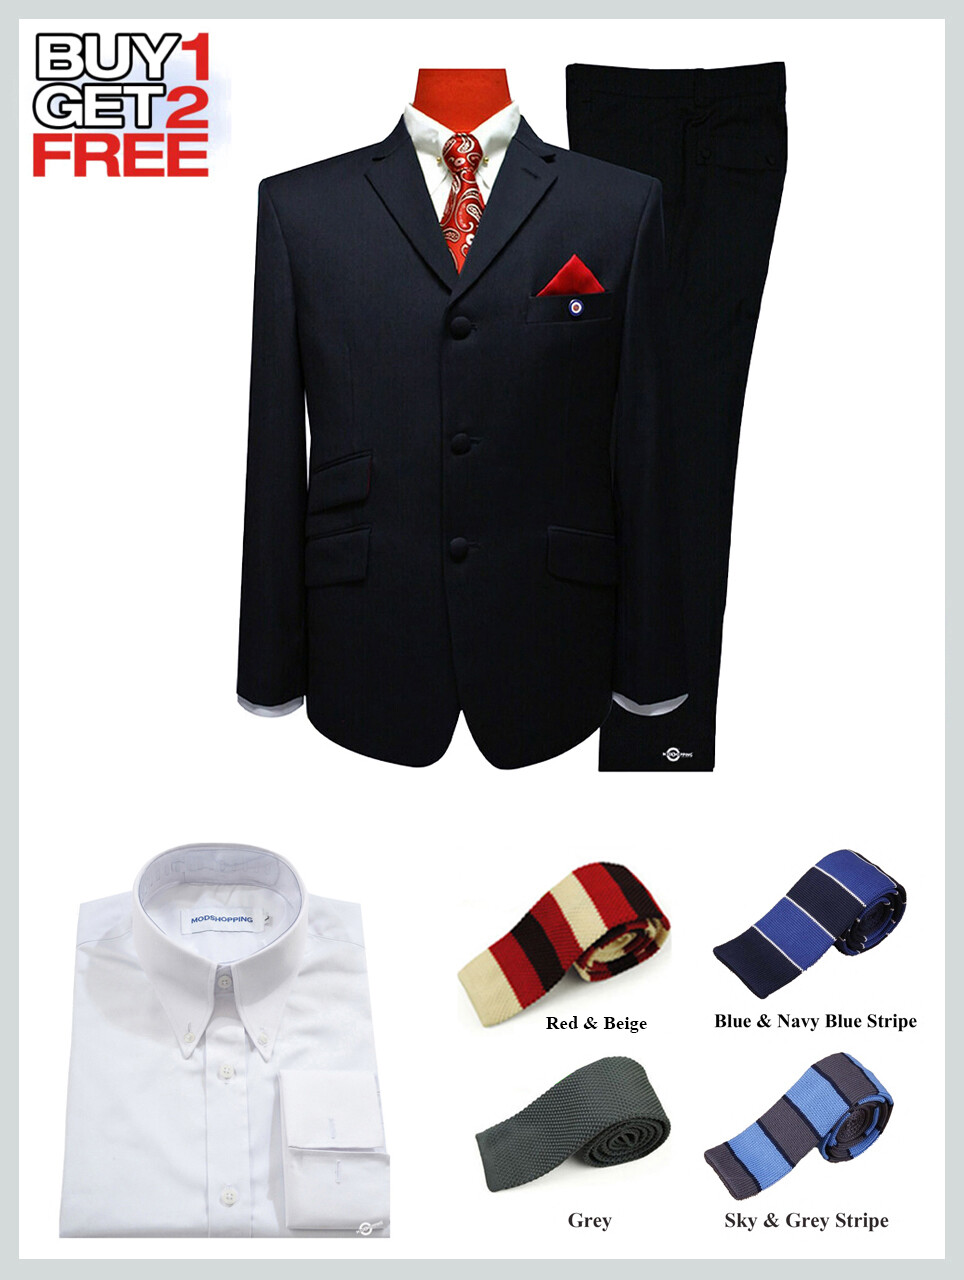 Suit Package | Tailored 3 Button Black Mod Suit For Men.